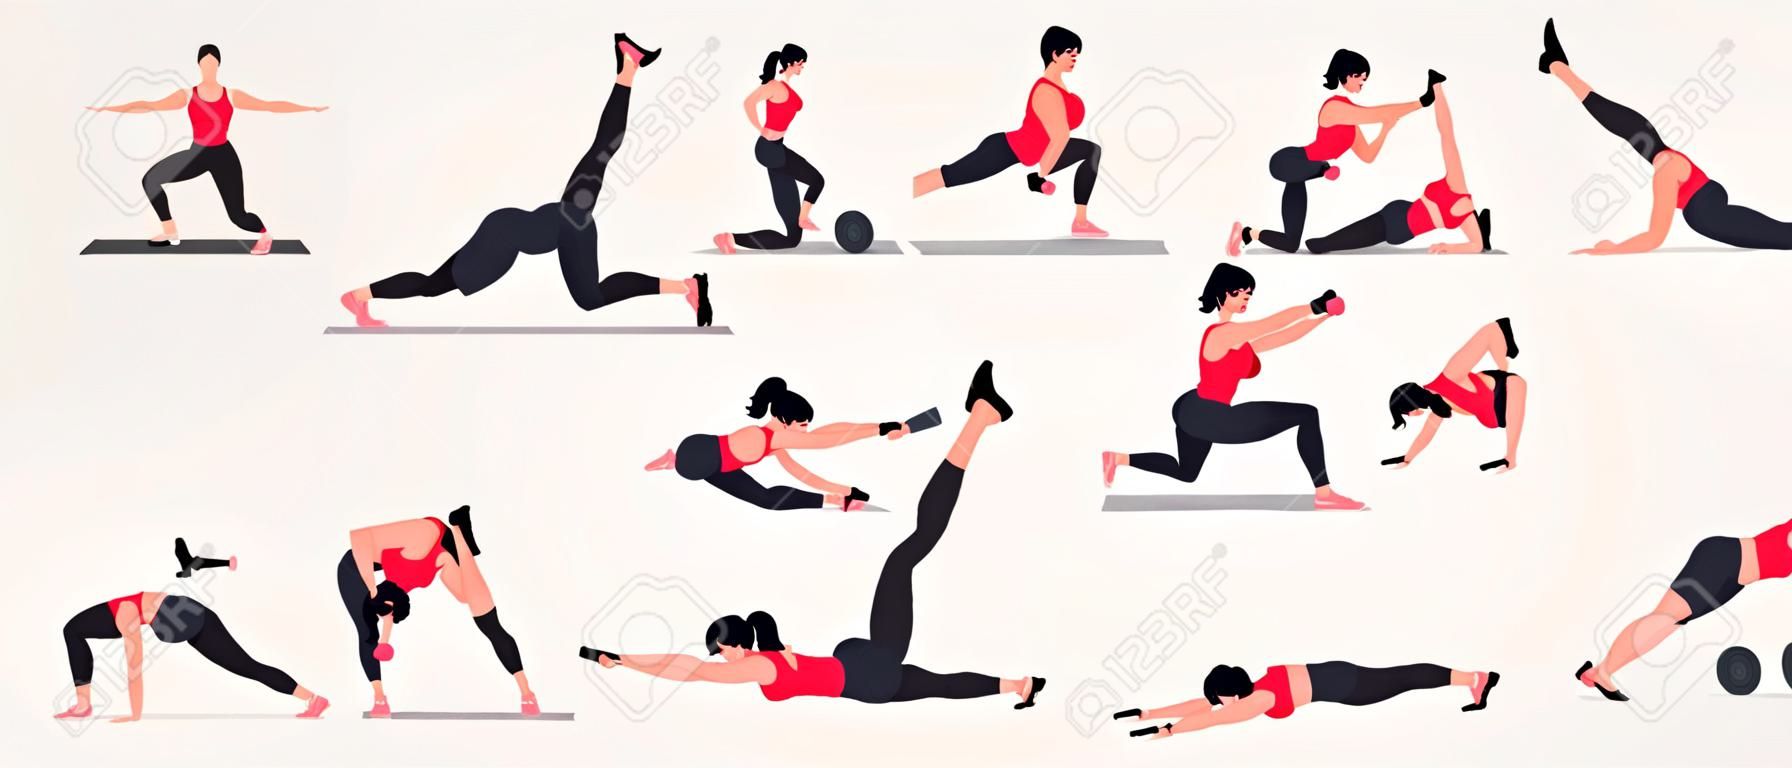 Conjunto de exercícios de tonificação corporal. Mulheres fazendo exercícios de fitness e ioga. Lunges, Pushups, Squats, linhas de dumbbell, Burpees, pranchas laterais, Situps, ponte Glute, aumento de perna, torção russa, Side Crunch.etc